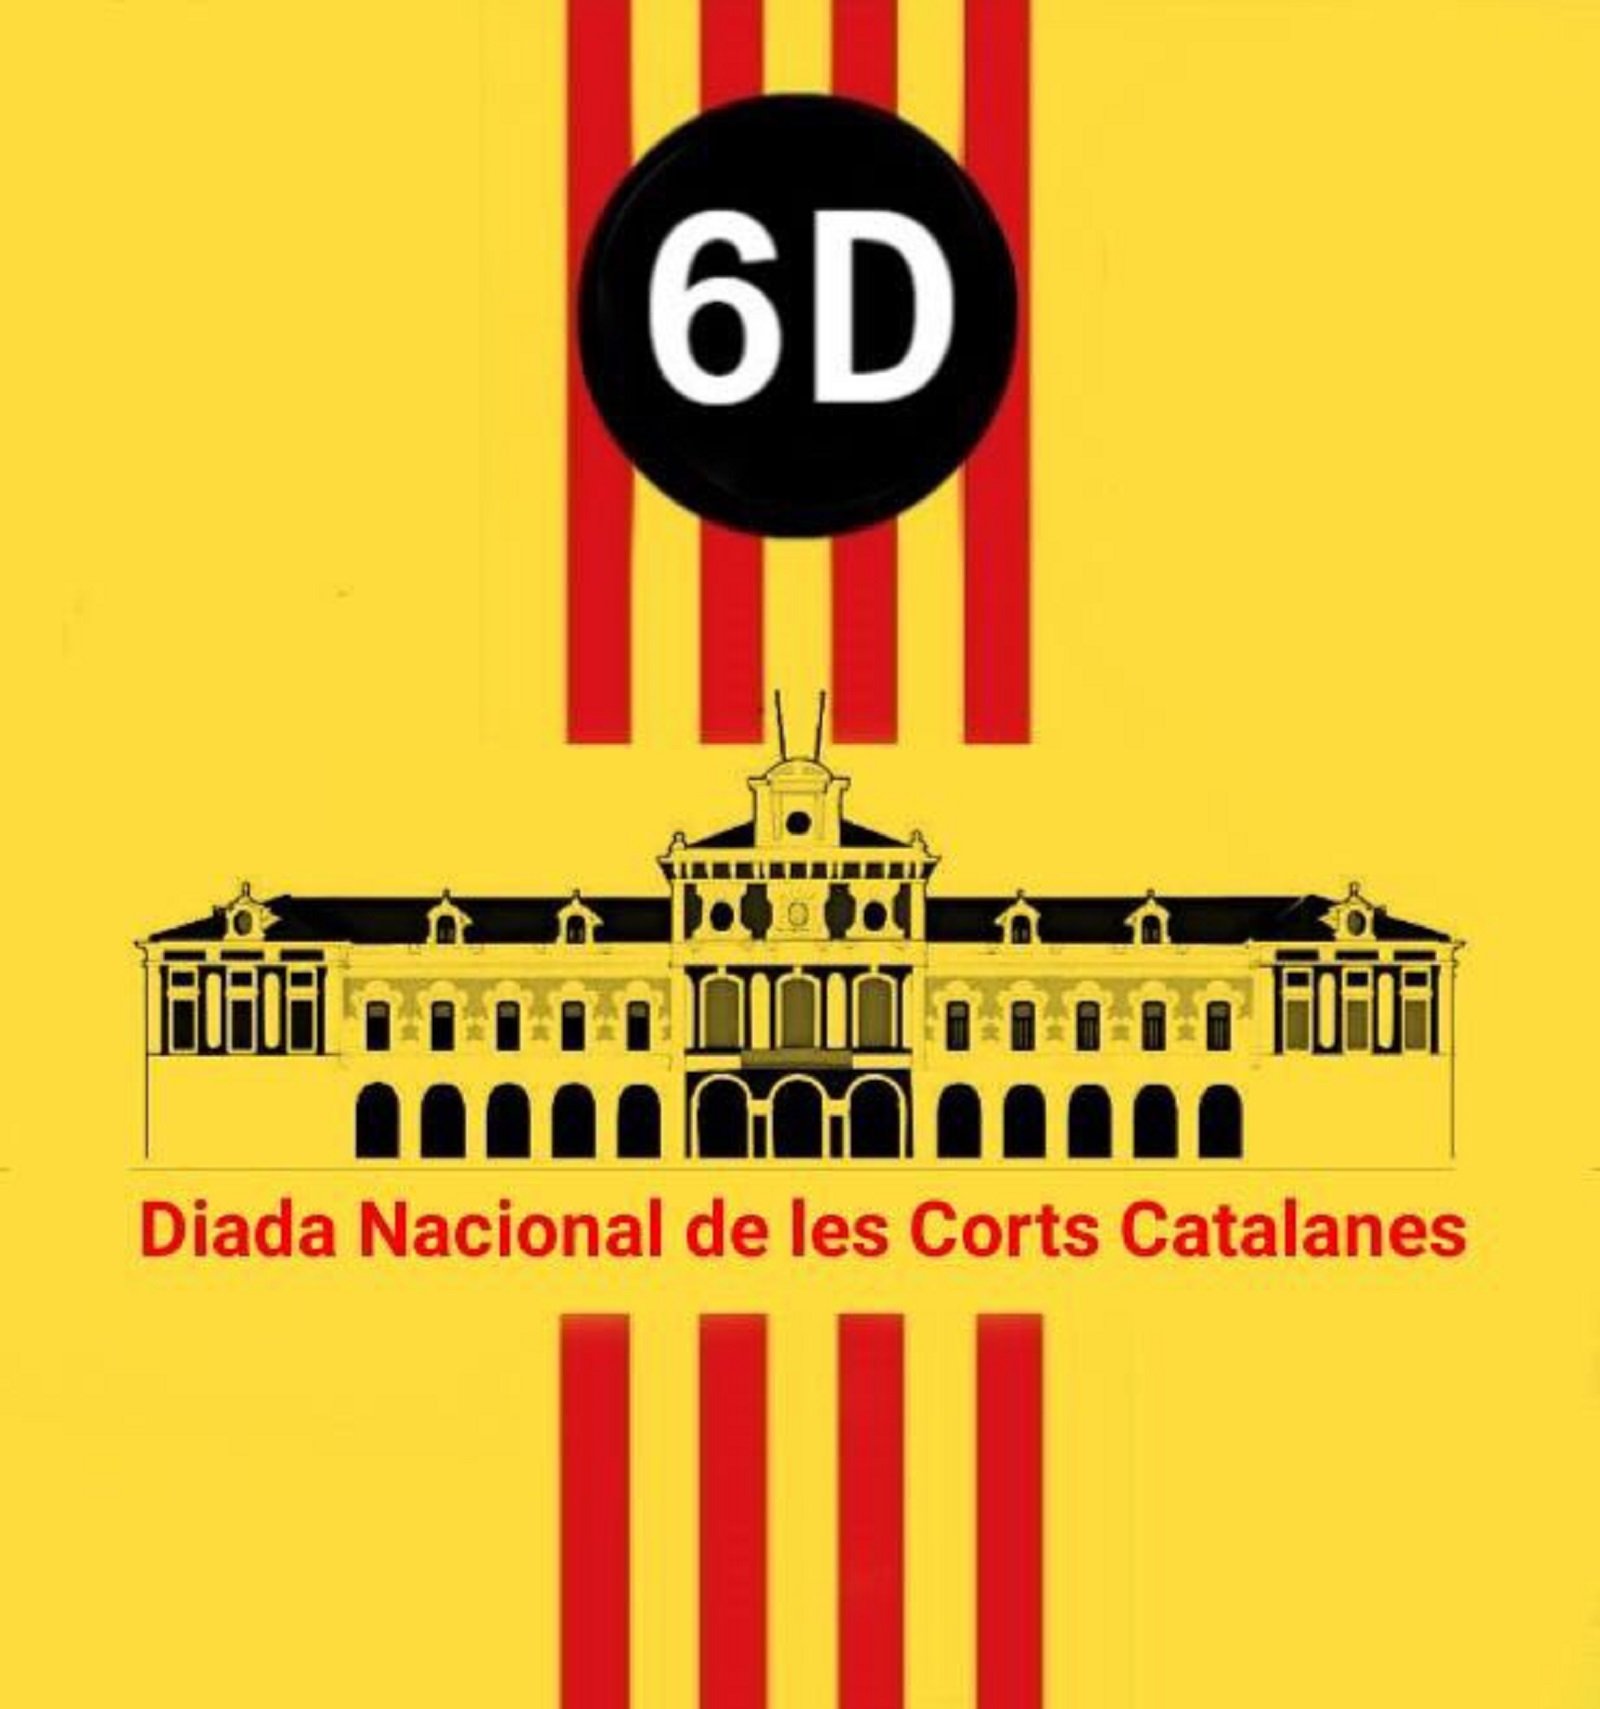 "L'altra festa" del 6 de desembre: Diada Nacional de les Corts Catalanes